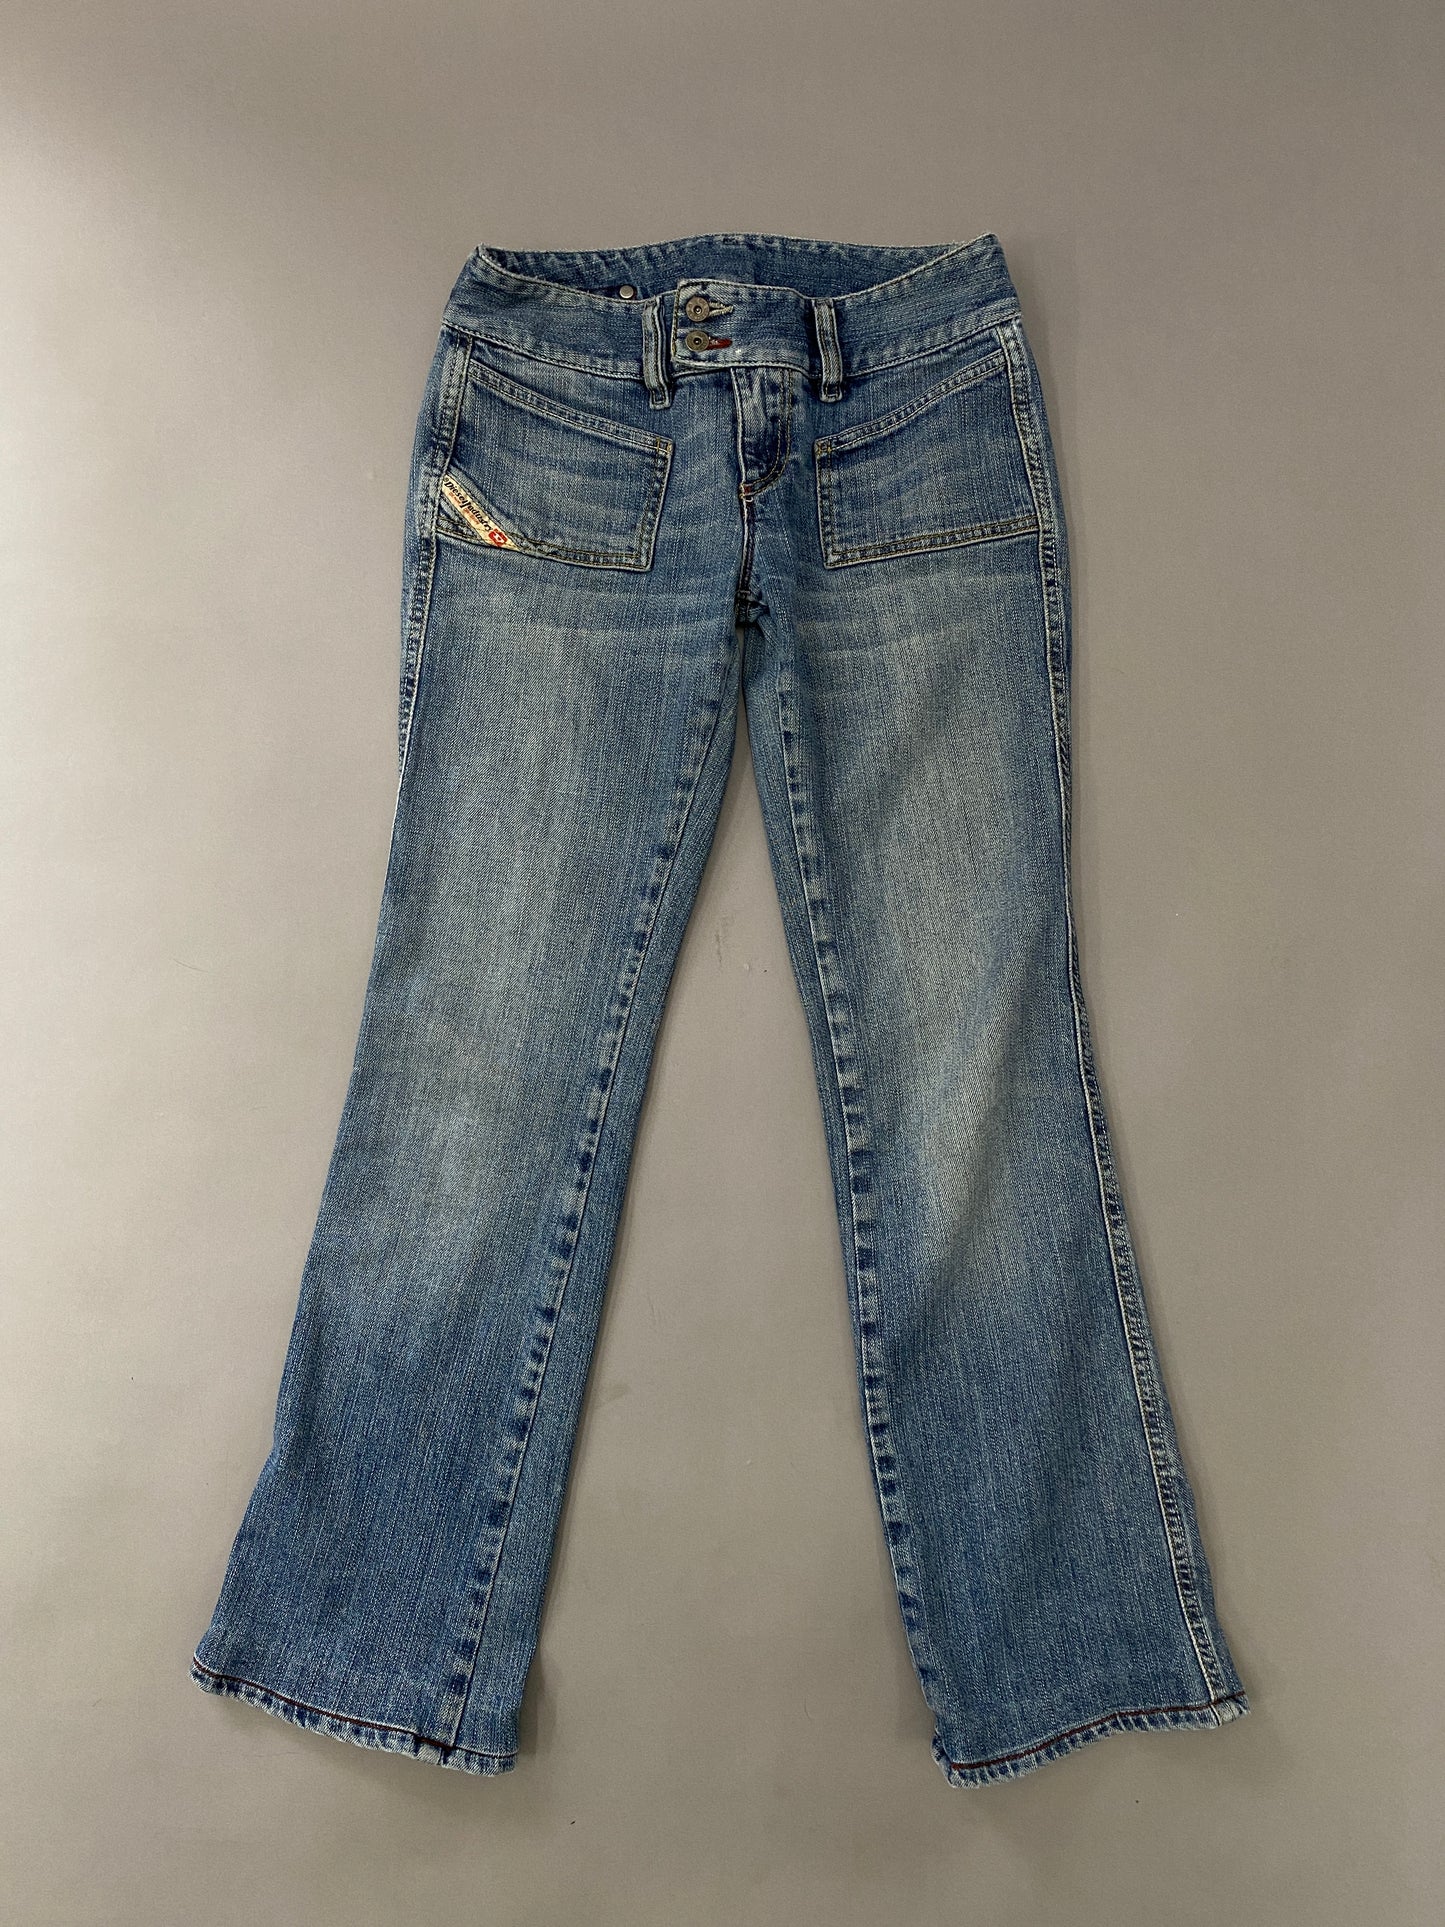 Vintage Diesel Jeans - 27